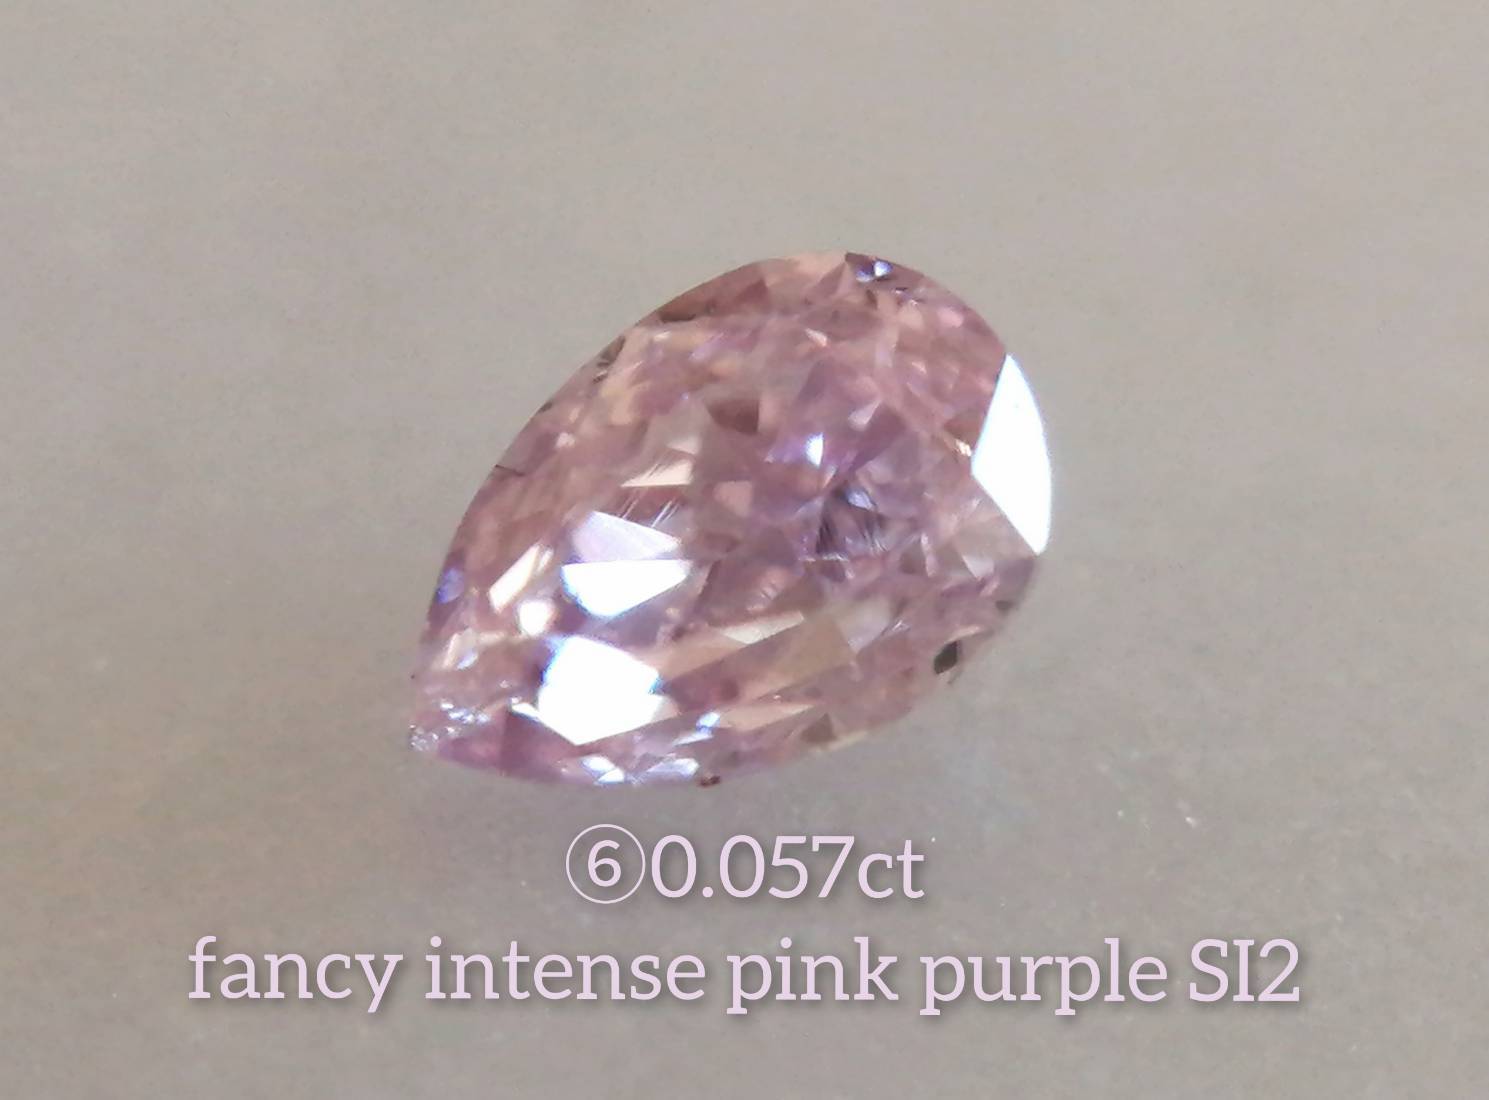 パープルダイヤモンドルース 0.065ct fancy intense pink purple SI1